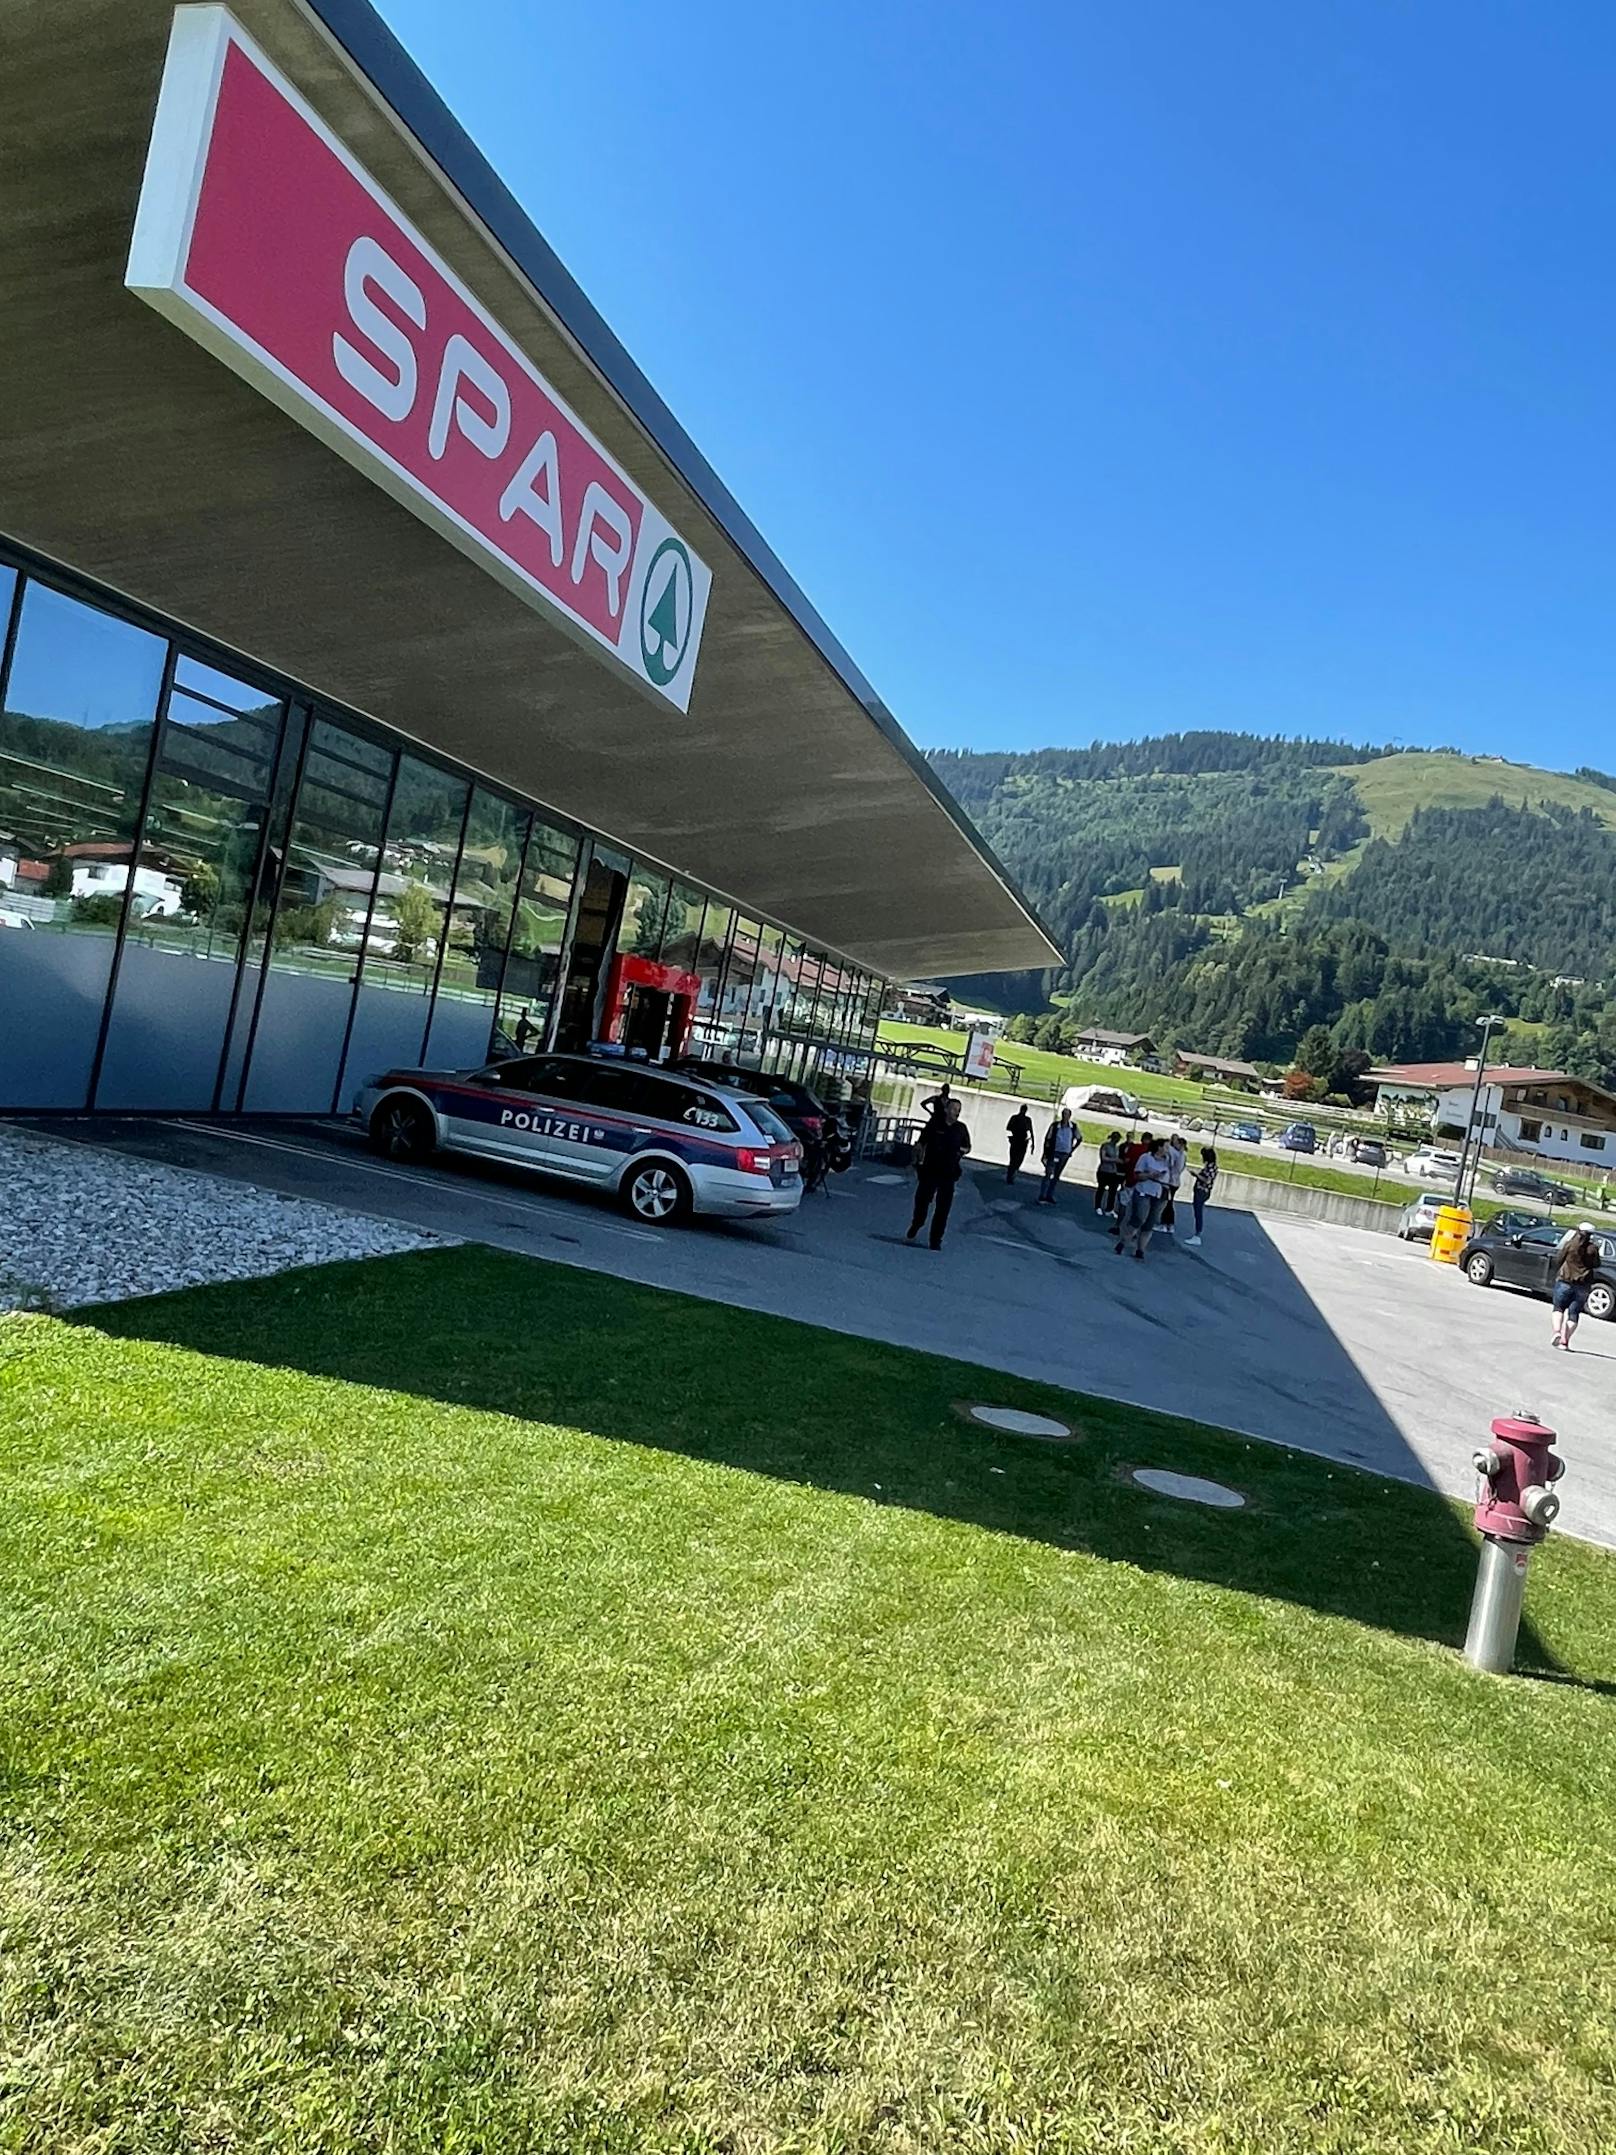 Wie die "Tiroler Tageszeitung" berichtet, ereignete sich das Drama am Dienstagvormittag vor einem Spar in Ellmau. Eine Autofahrerin verlor gegen 9.00 Uhr aus bisher ungeklärter Ursache die Kontrolle über ihr Fahrzeug.